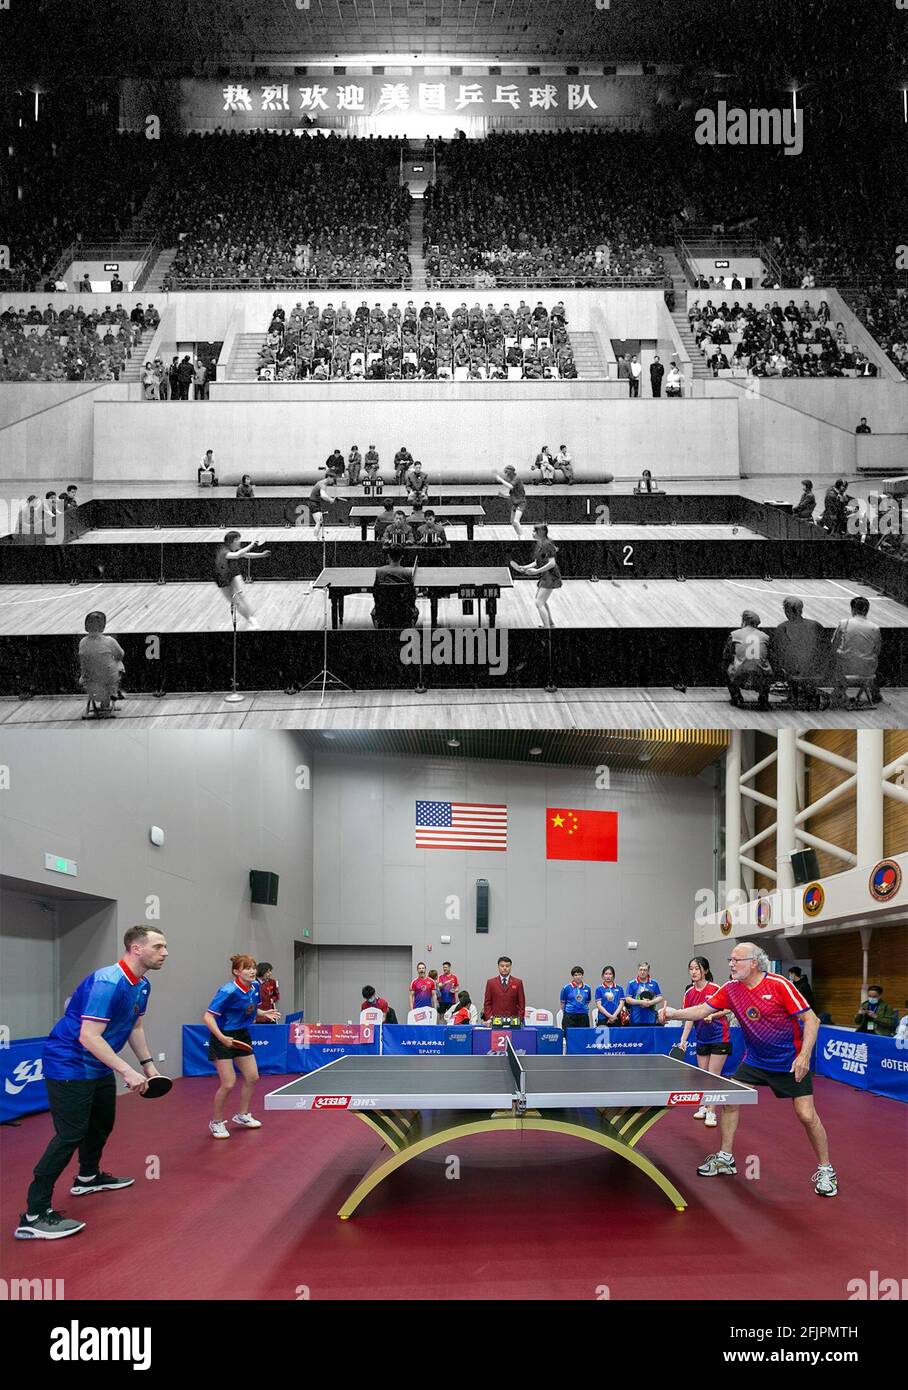 (210426) -- BEIJING, 26 de abril de 2021 (Xinhua) -- foto combinada muestra a jugadores de China y Estados Unidos compitiendo en un partido amistoso con el tenis de mesa en Beijing, capital de China, 13 de abril de 1971 (arriba), Y jugadores de China y Estados Unidos compitiendo en un partido amistoso para conmemorar el 50th aniversario de la Diplomacia Ping-Pong entre los dos países en el Museo de la Federación Internacional de Tenis de Mesa en Shanghai, China del Este, 10 de abril de 2021. Hace cincuenta años, con un encuentro inesperado pero afortunado, los jugadores chinos y americanos del ping-pong rompieron con ideologi profundamente arraigado Foto de stock